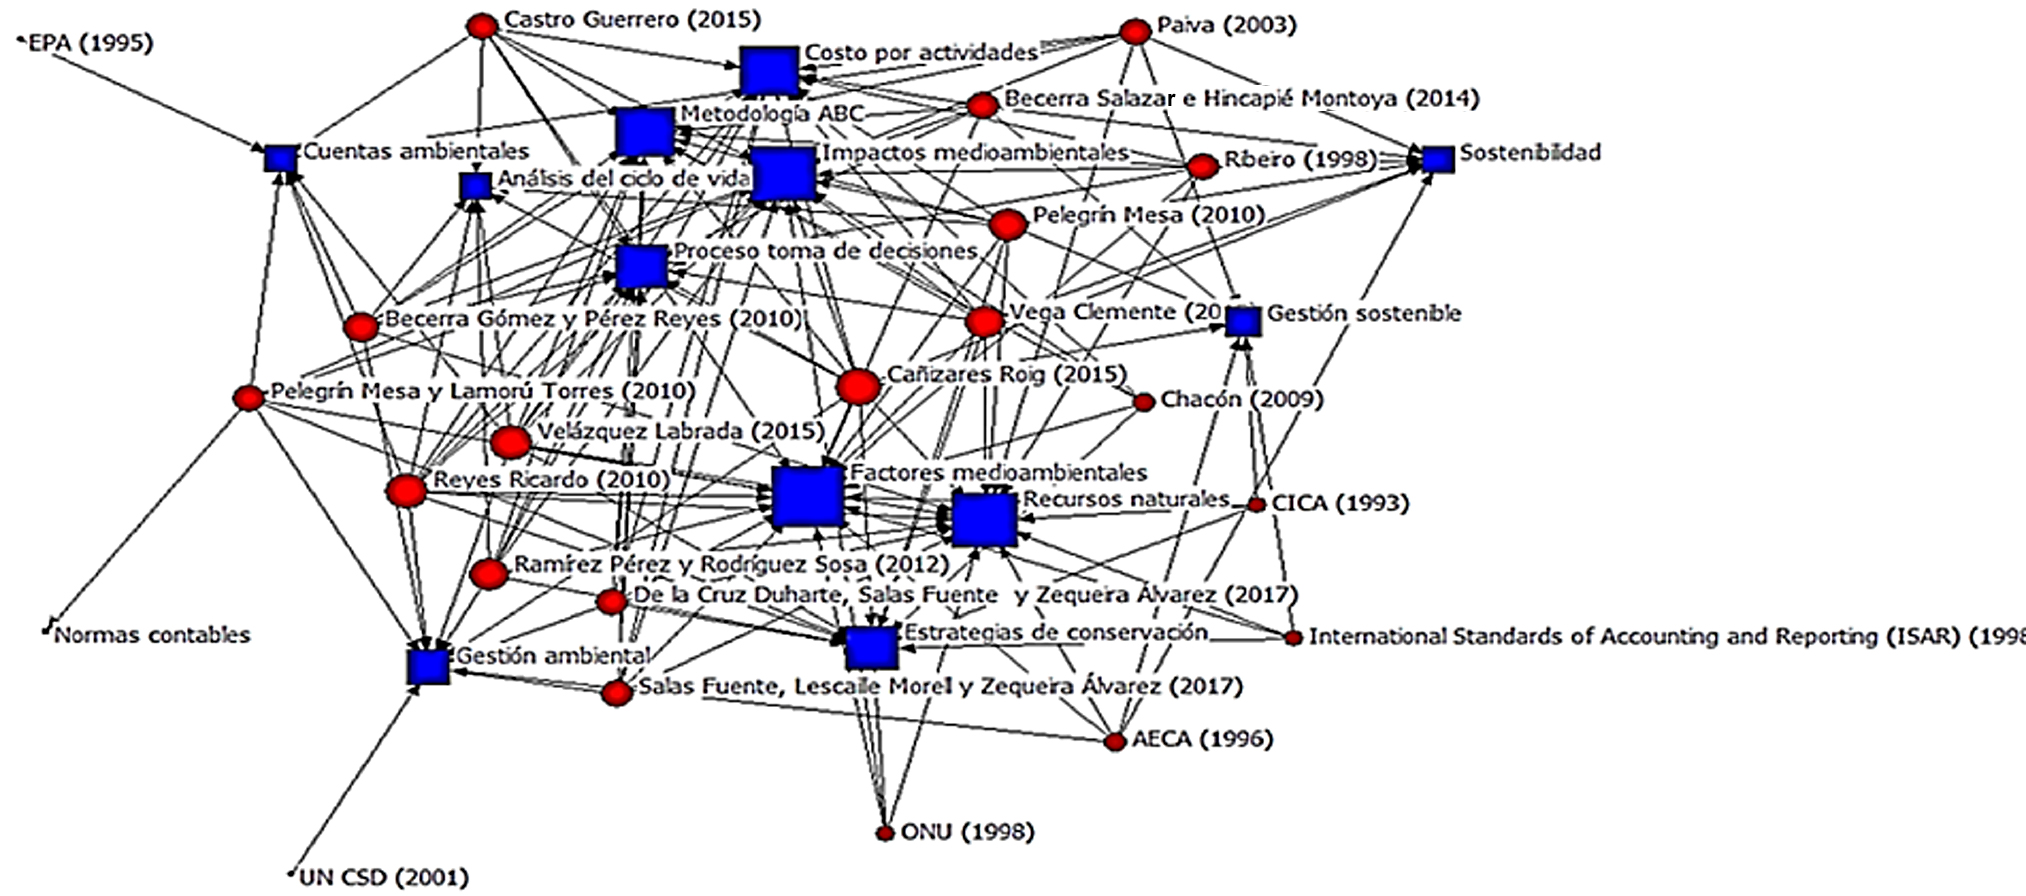 Análisis de redes entre las variables y los enfoques teóricos metodológicos estudiados